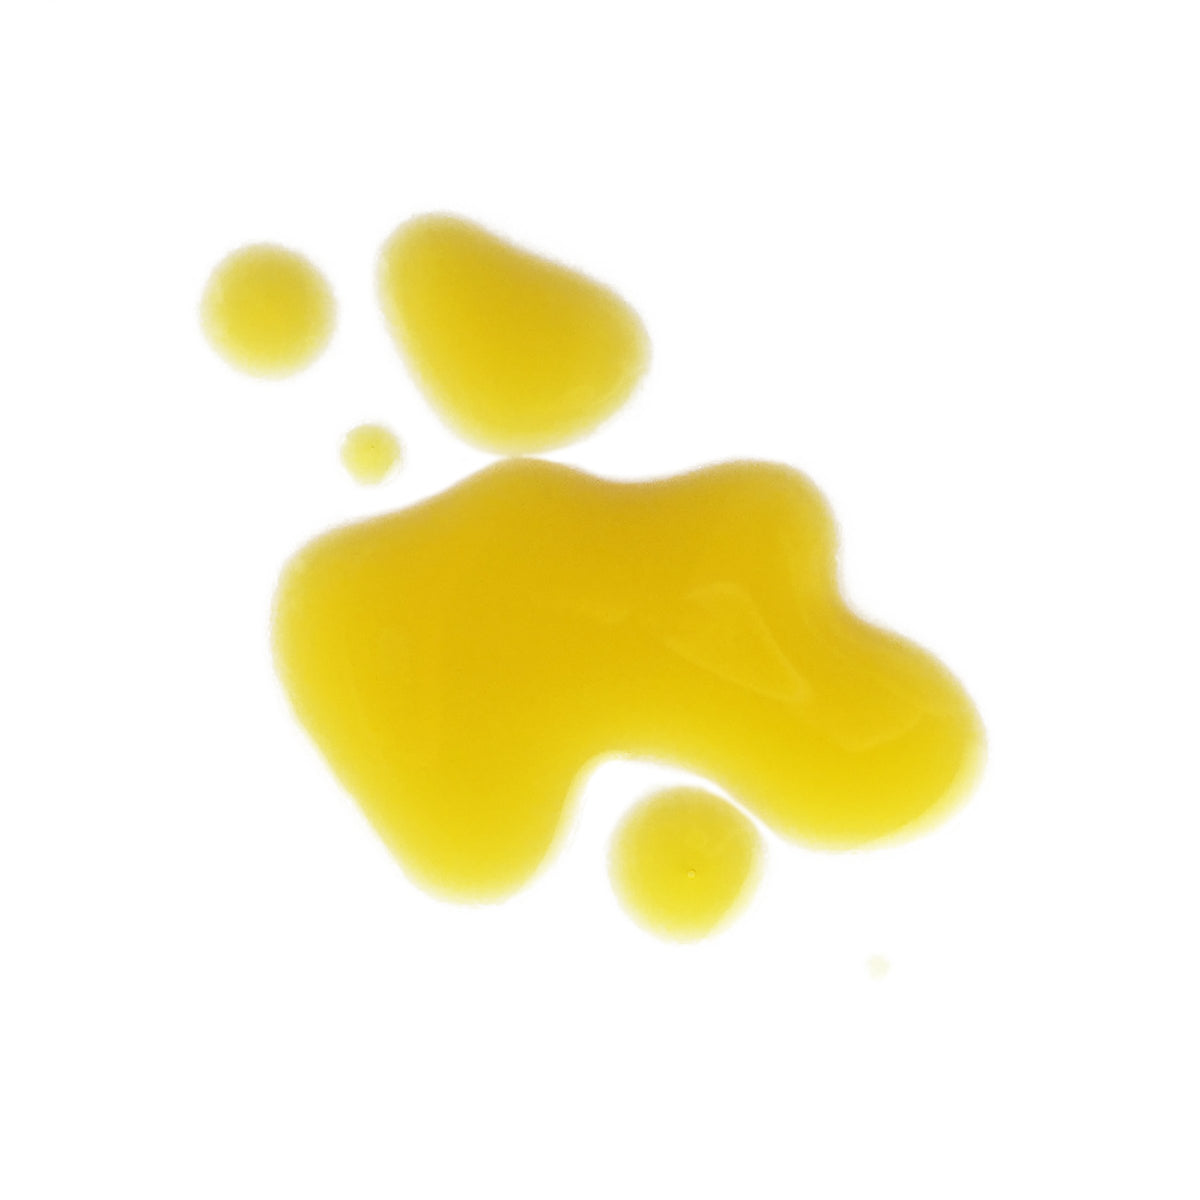 Beauty Elixir II: Balancing Flowers yellow orange tinted oil texture.